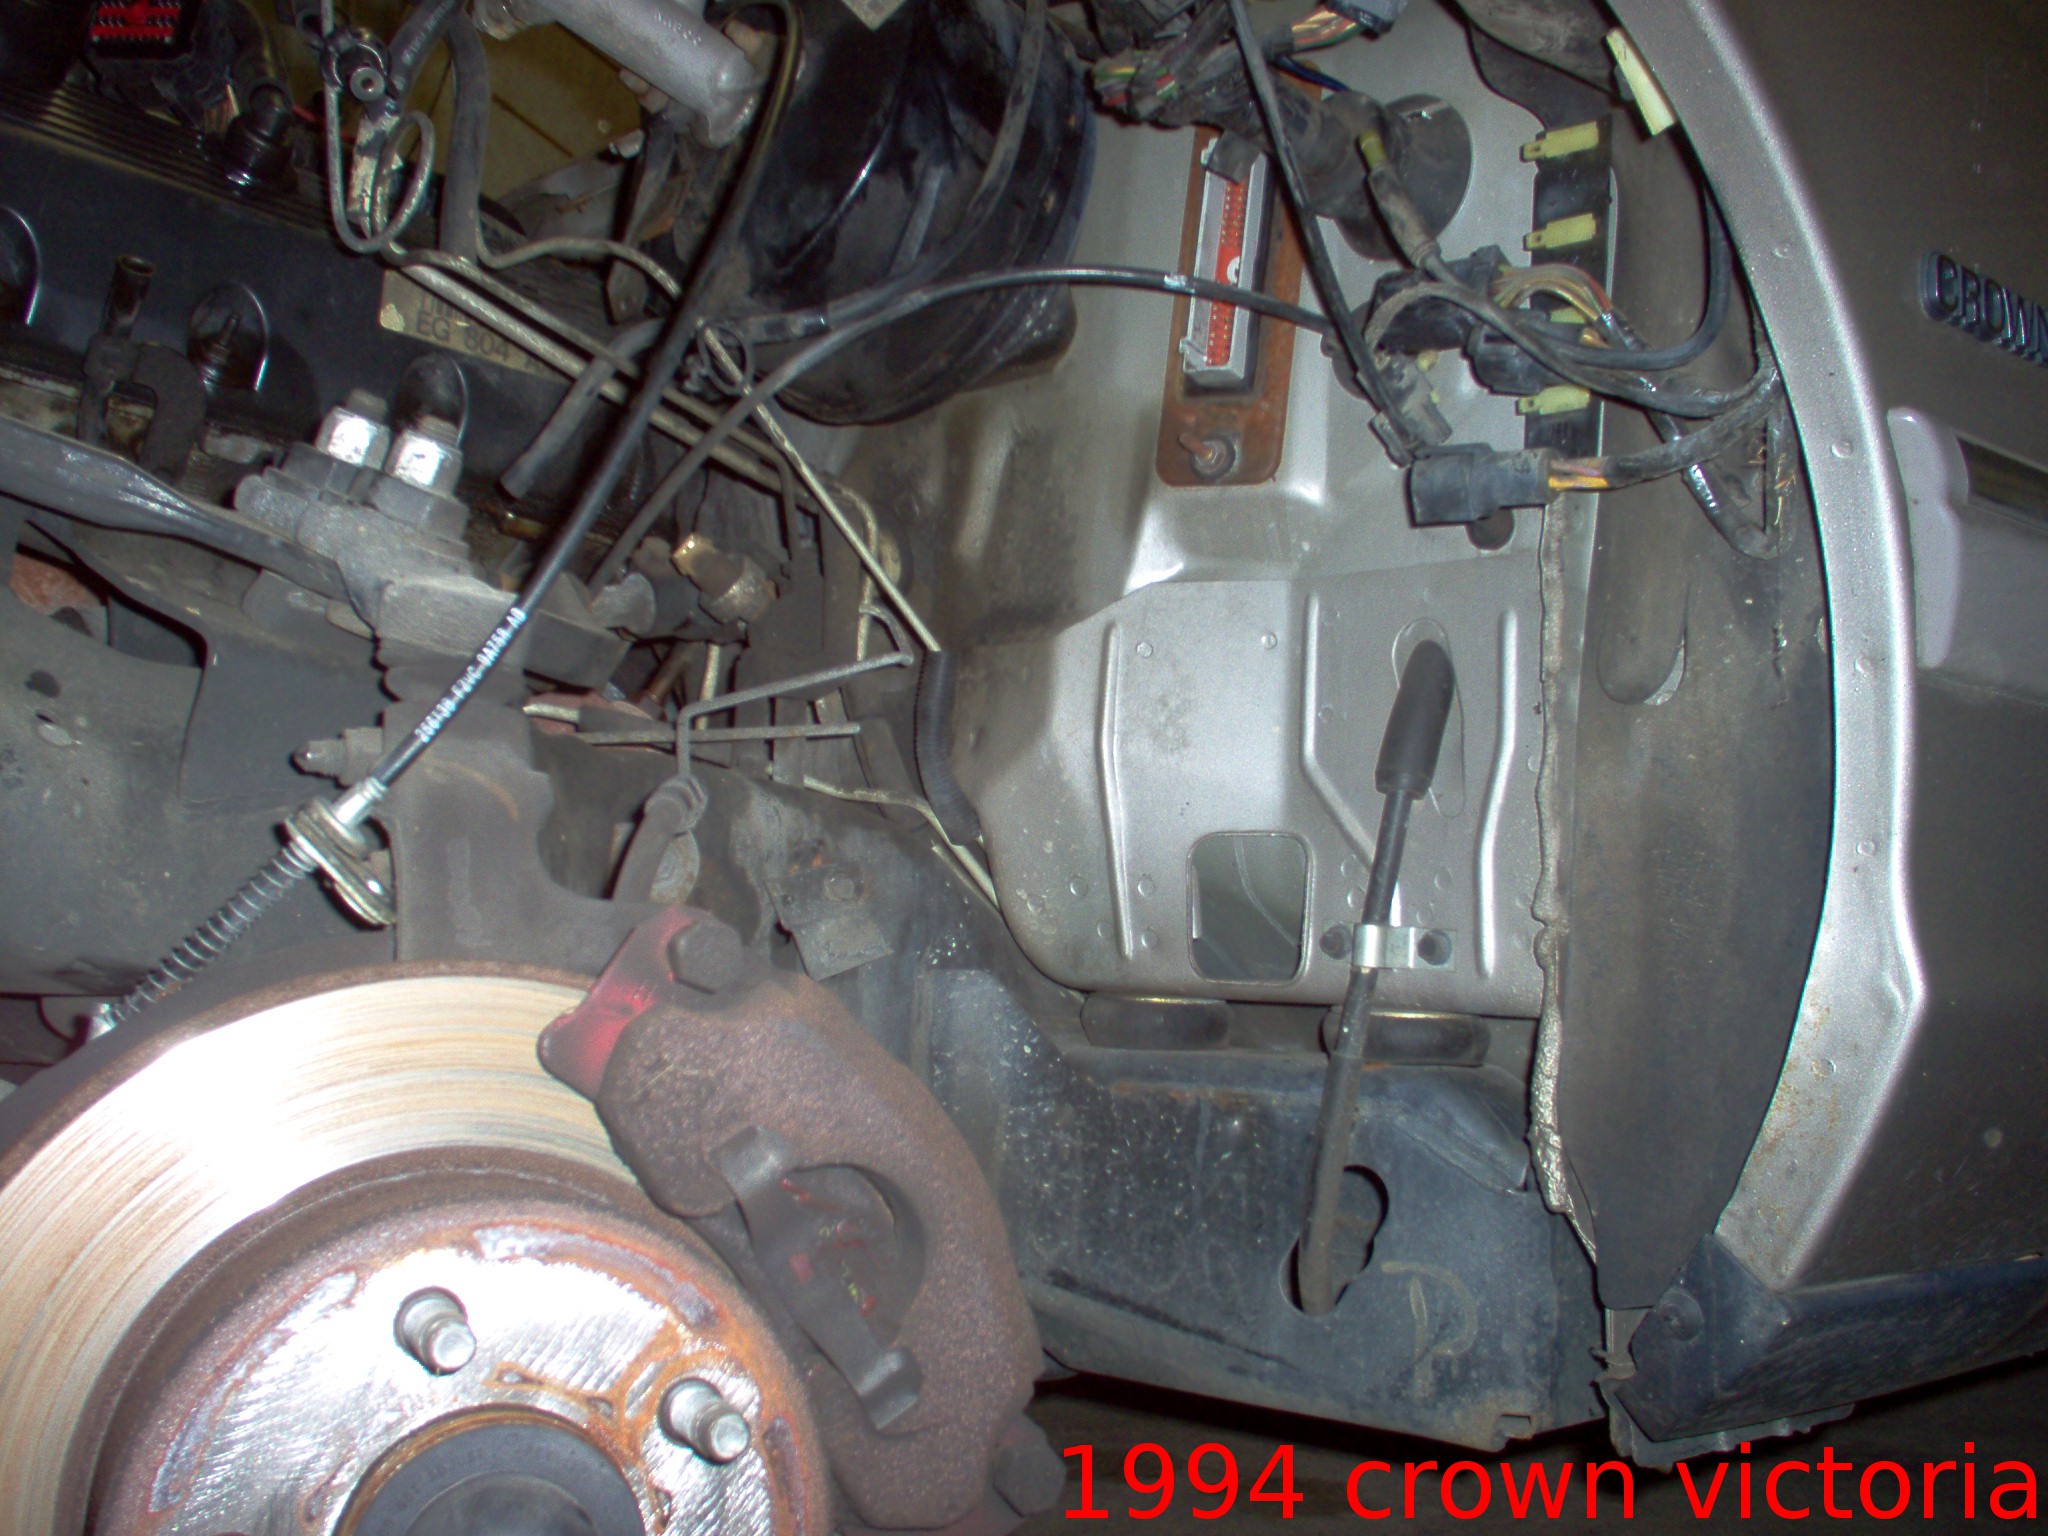 2002 Ford crown victoria vacuum leak #1